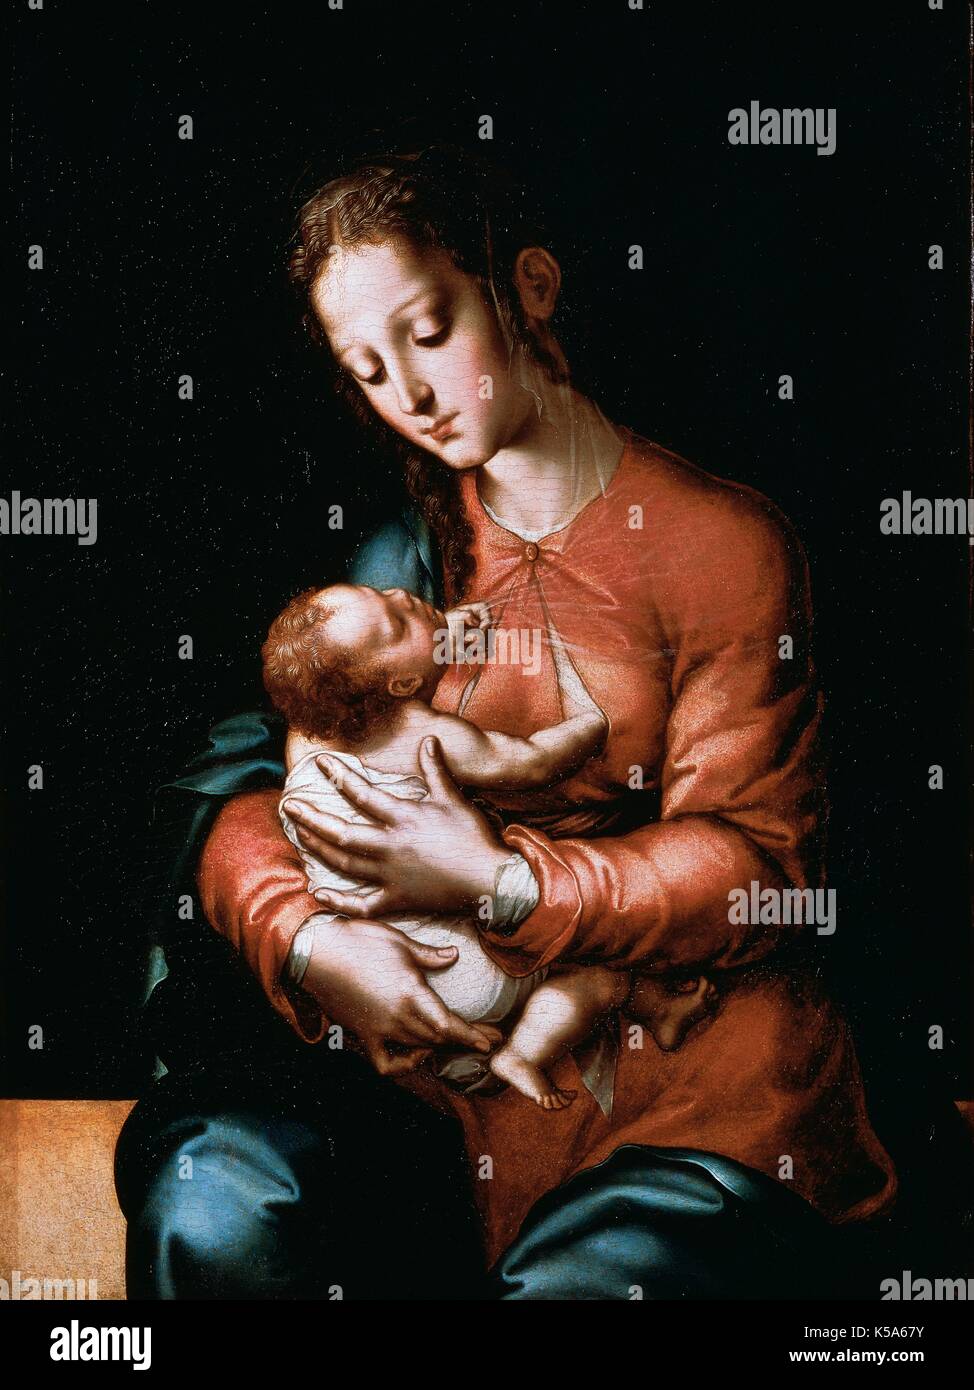 L'art de la Renaissance Luis de Morales (1510-1586) "El Divino", Vierge à l'enfant (vers 1565). Huile sur carton peinture. Musée du Prado. Madrid. L'Espagne. Banque D'Images